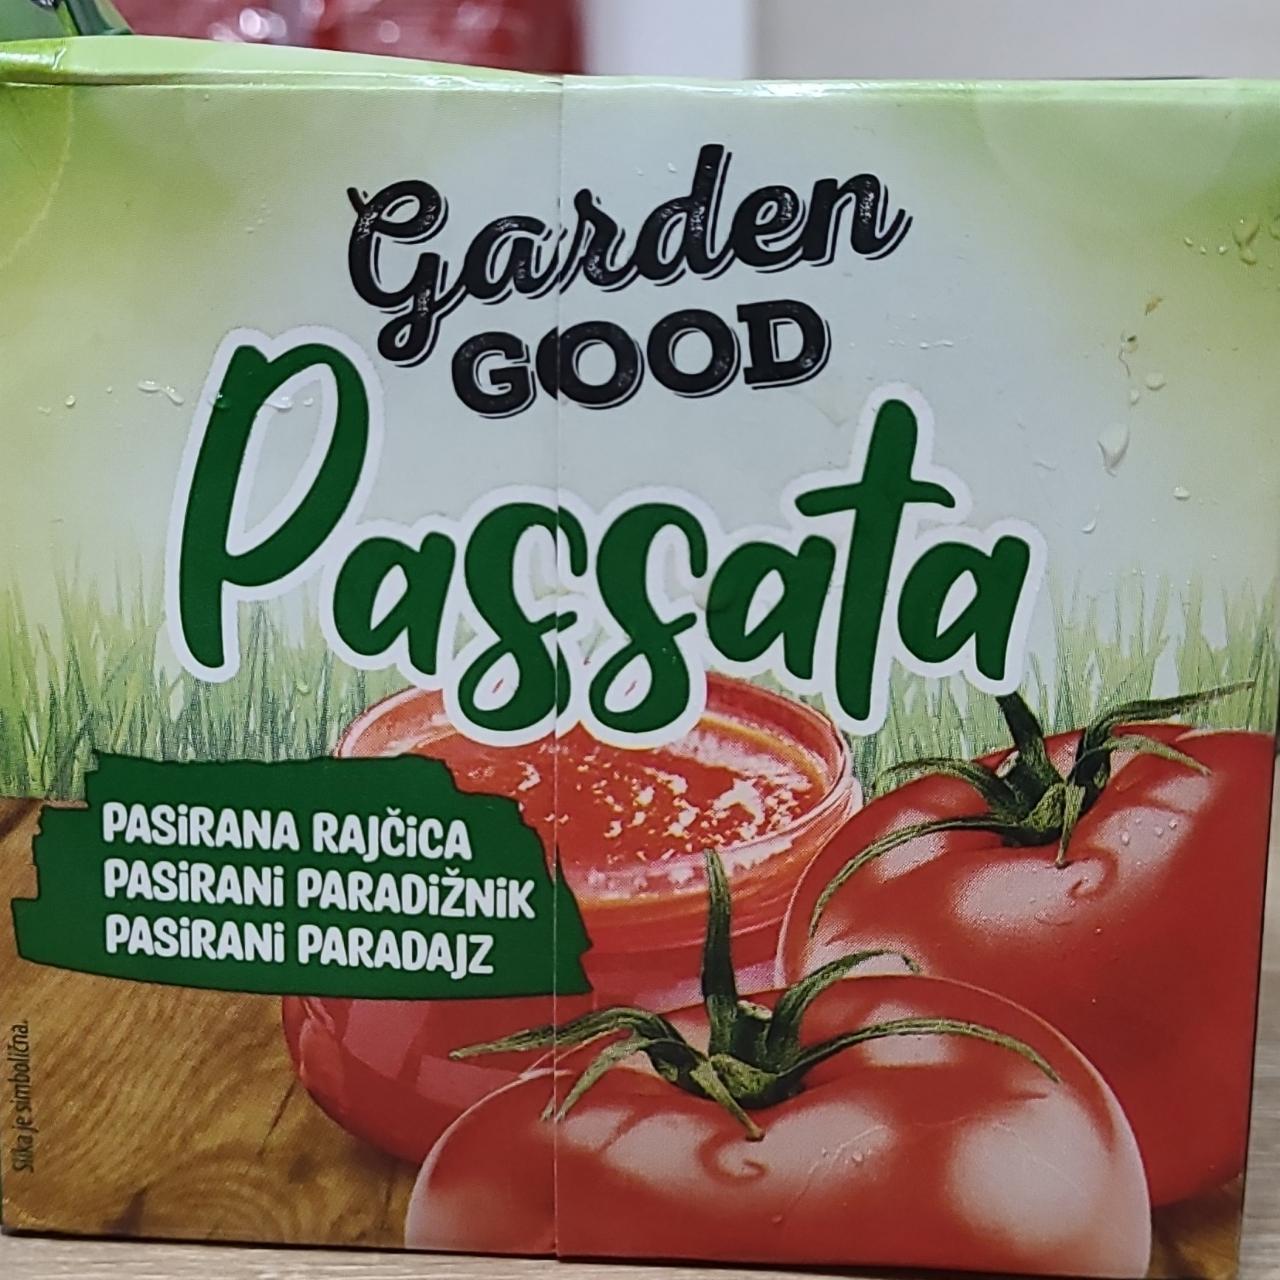 Фото - Томаты пассерованные Passata Garden Good